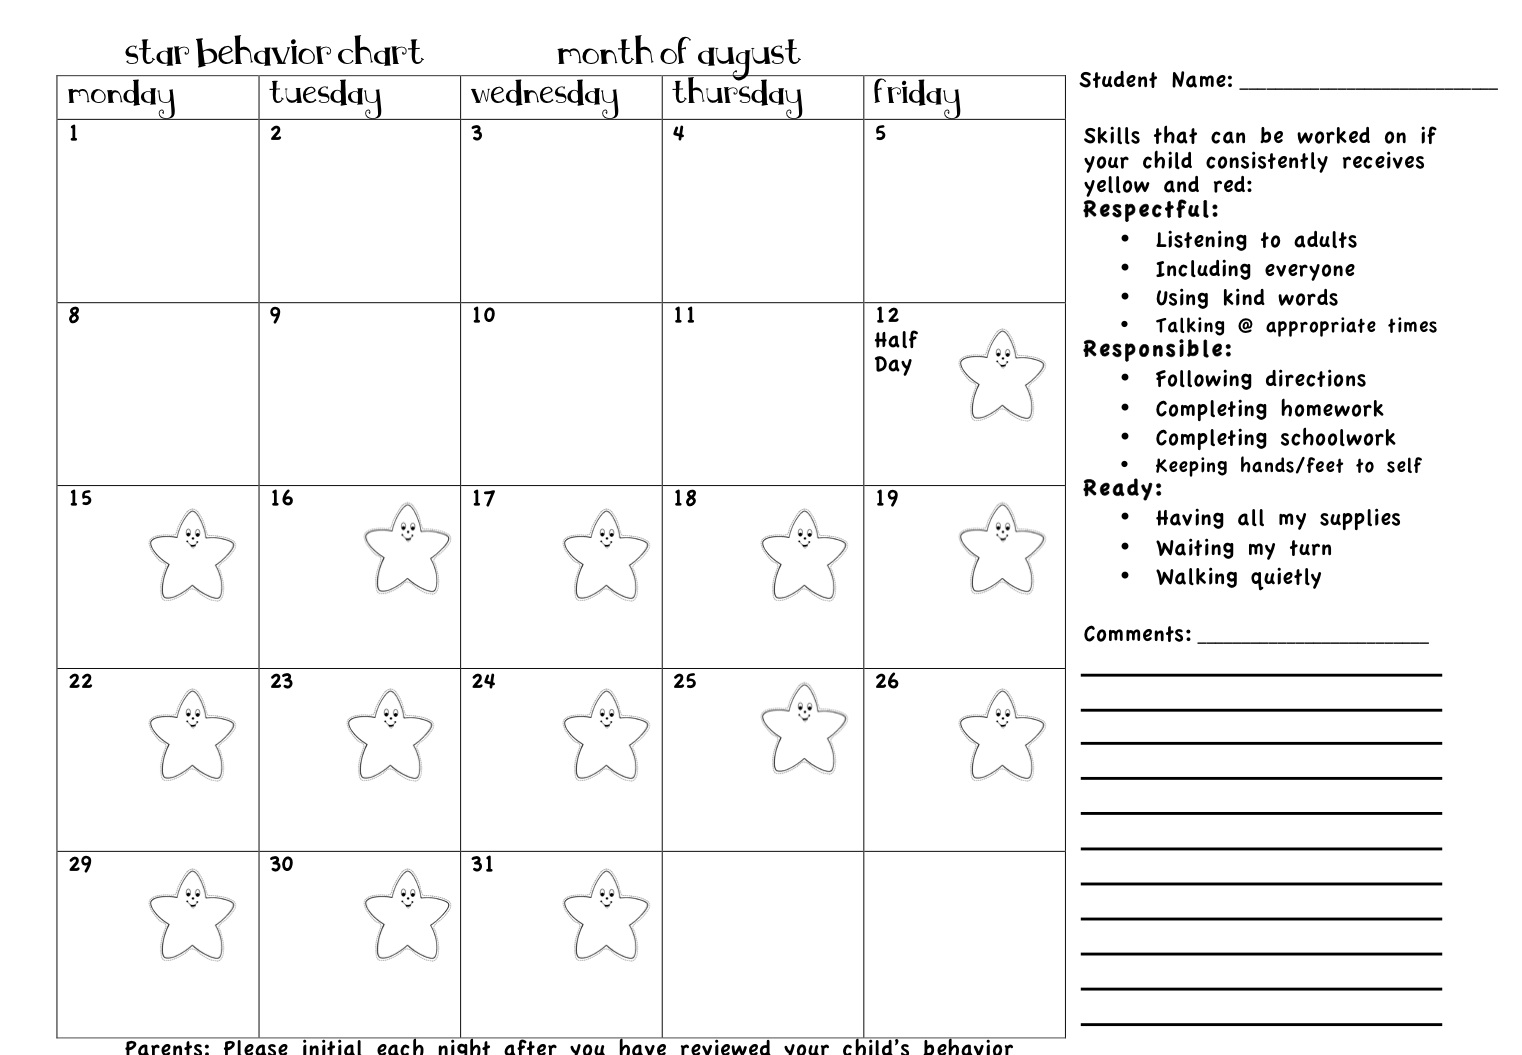 tattling-to-the-teacher-behavior-calendars